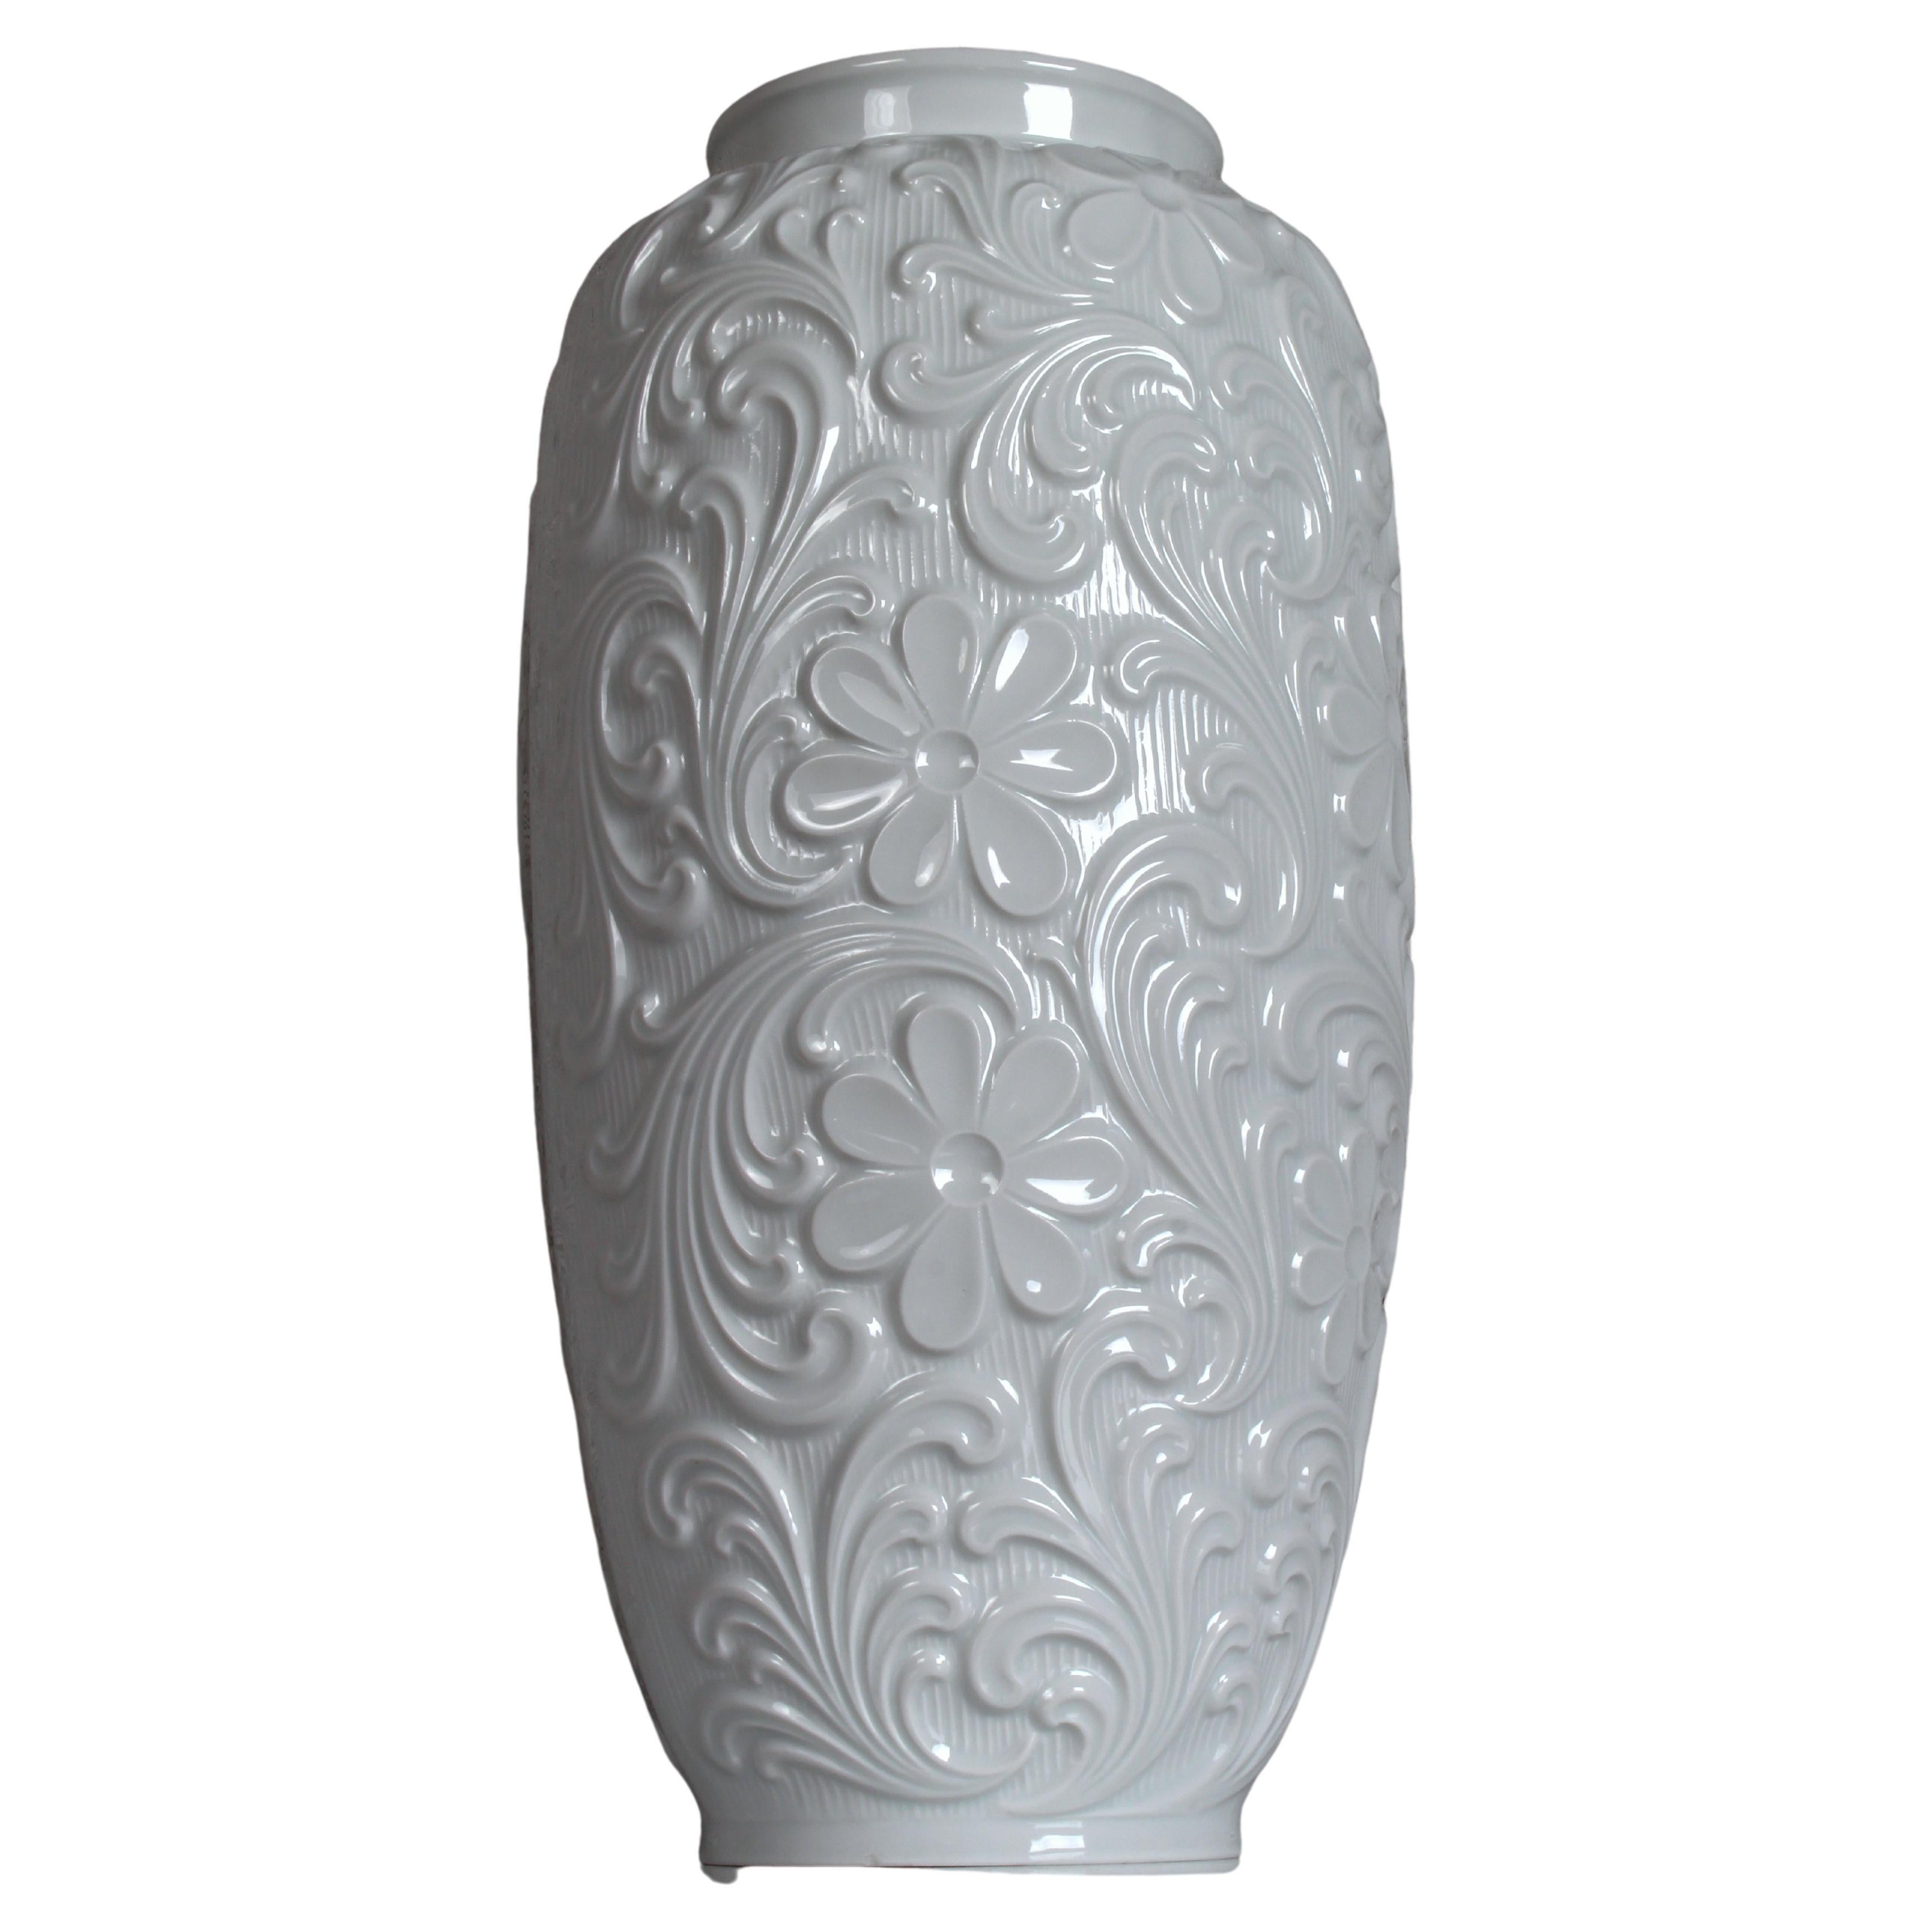 Midcentury Porcelain Floral / Paisley Floor Vase by Retsch & Co. Porzellanfabrik in Wunsiedel 

PORZELLANGESCHICHTE

Im 19. Jahrhundert wurde auf der Luisenburg noch Kalkstein und Granit abgebaut. Der Anschluss Wunsiedels an die Bahnlinie und